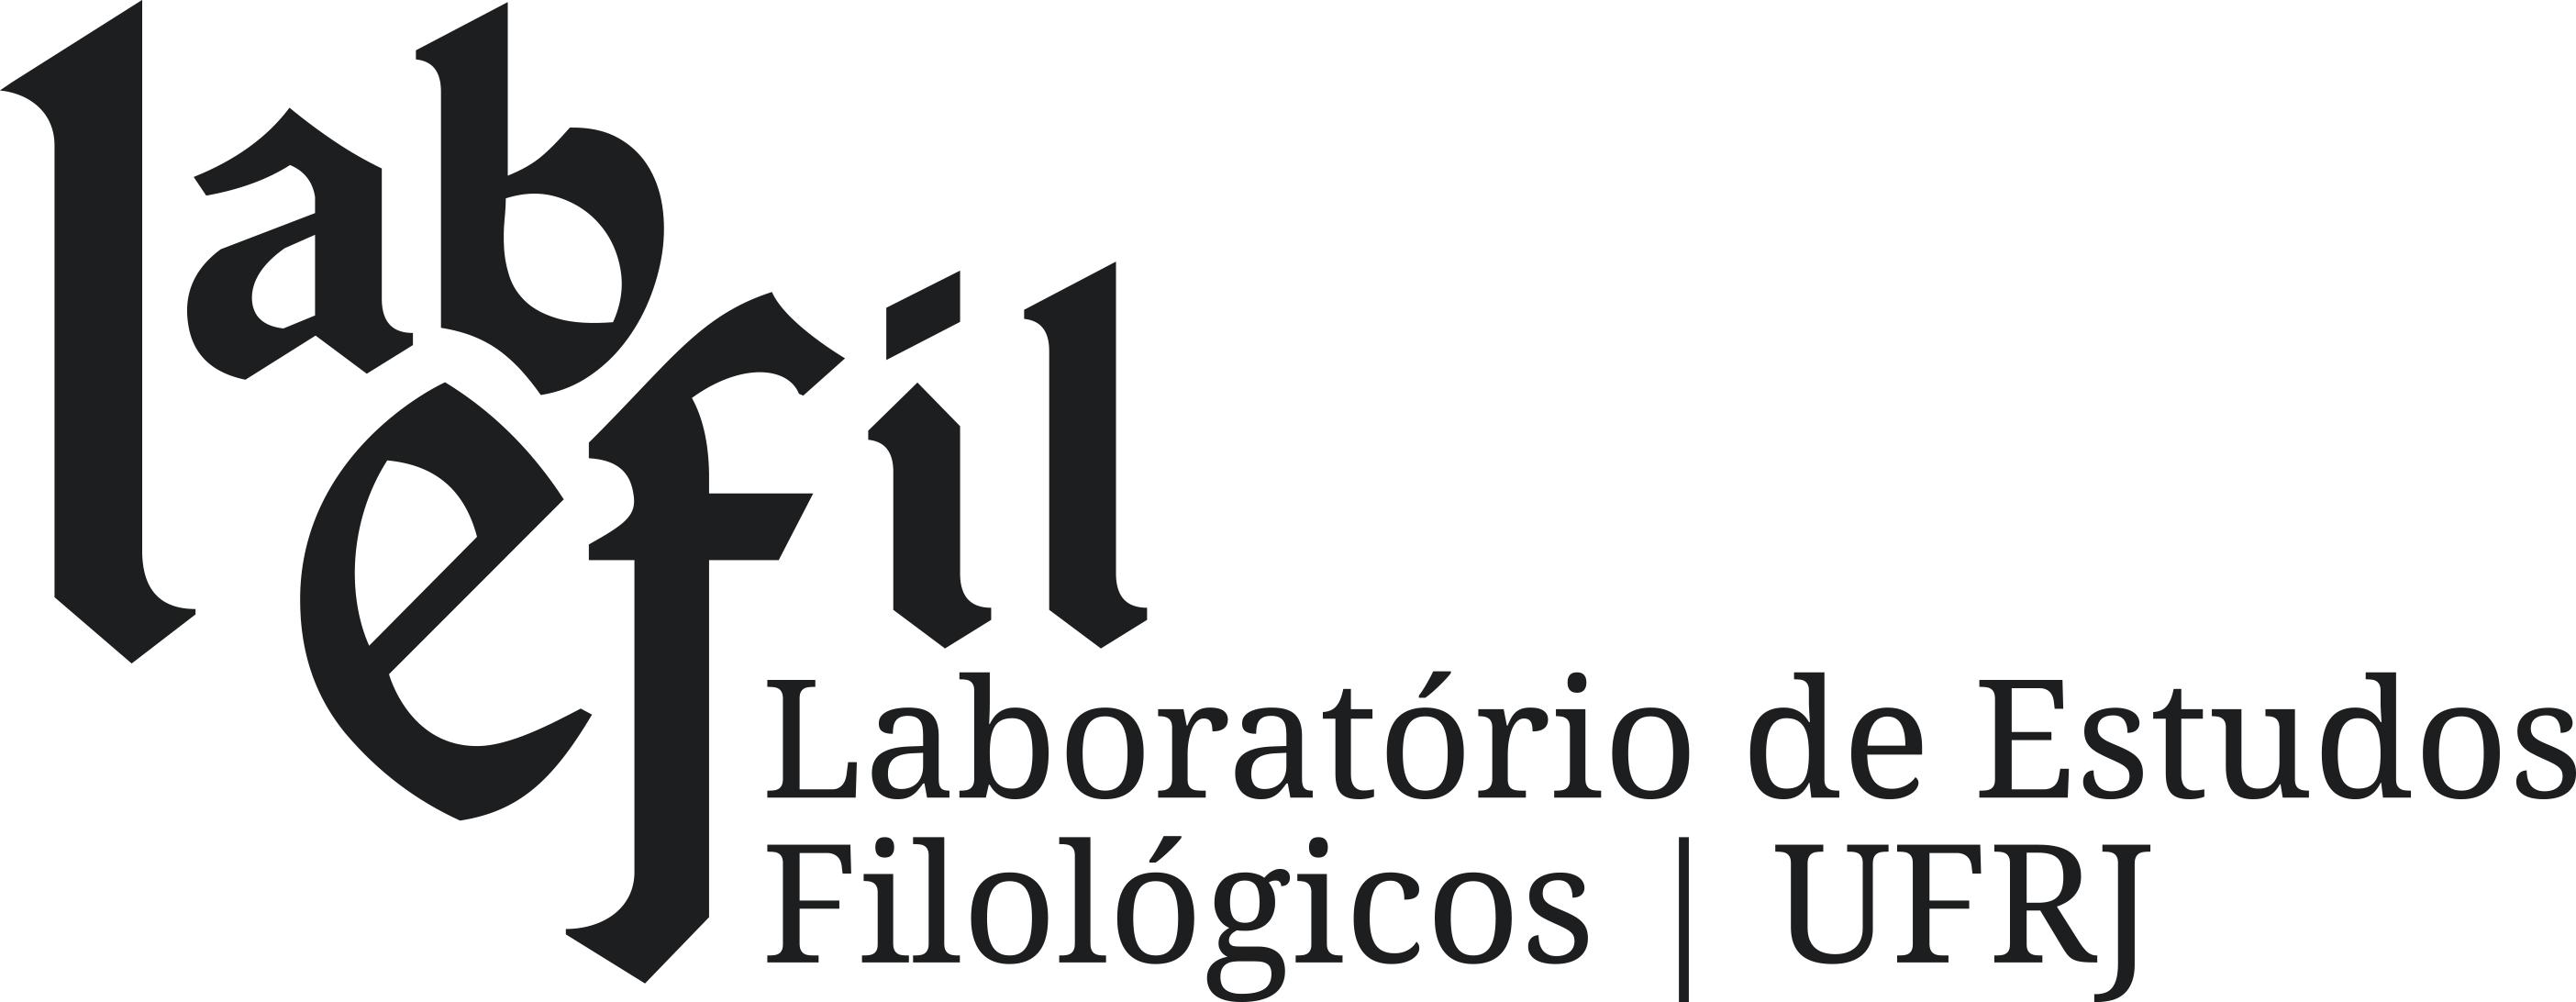 Laboratório de Estudos Filológicos | UFRJ